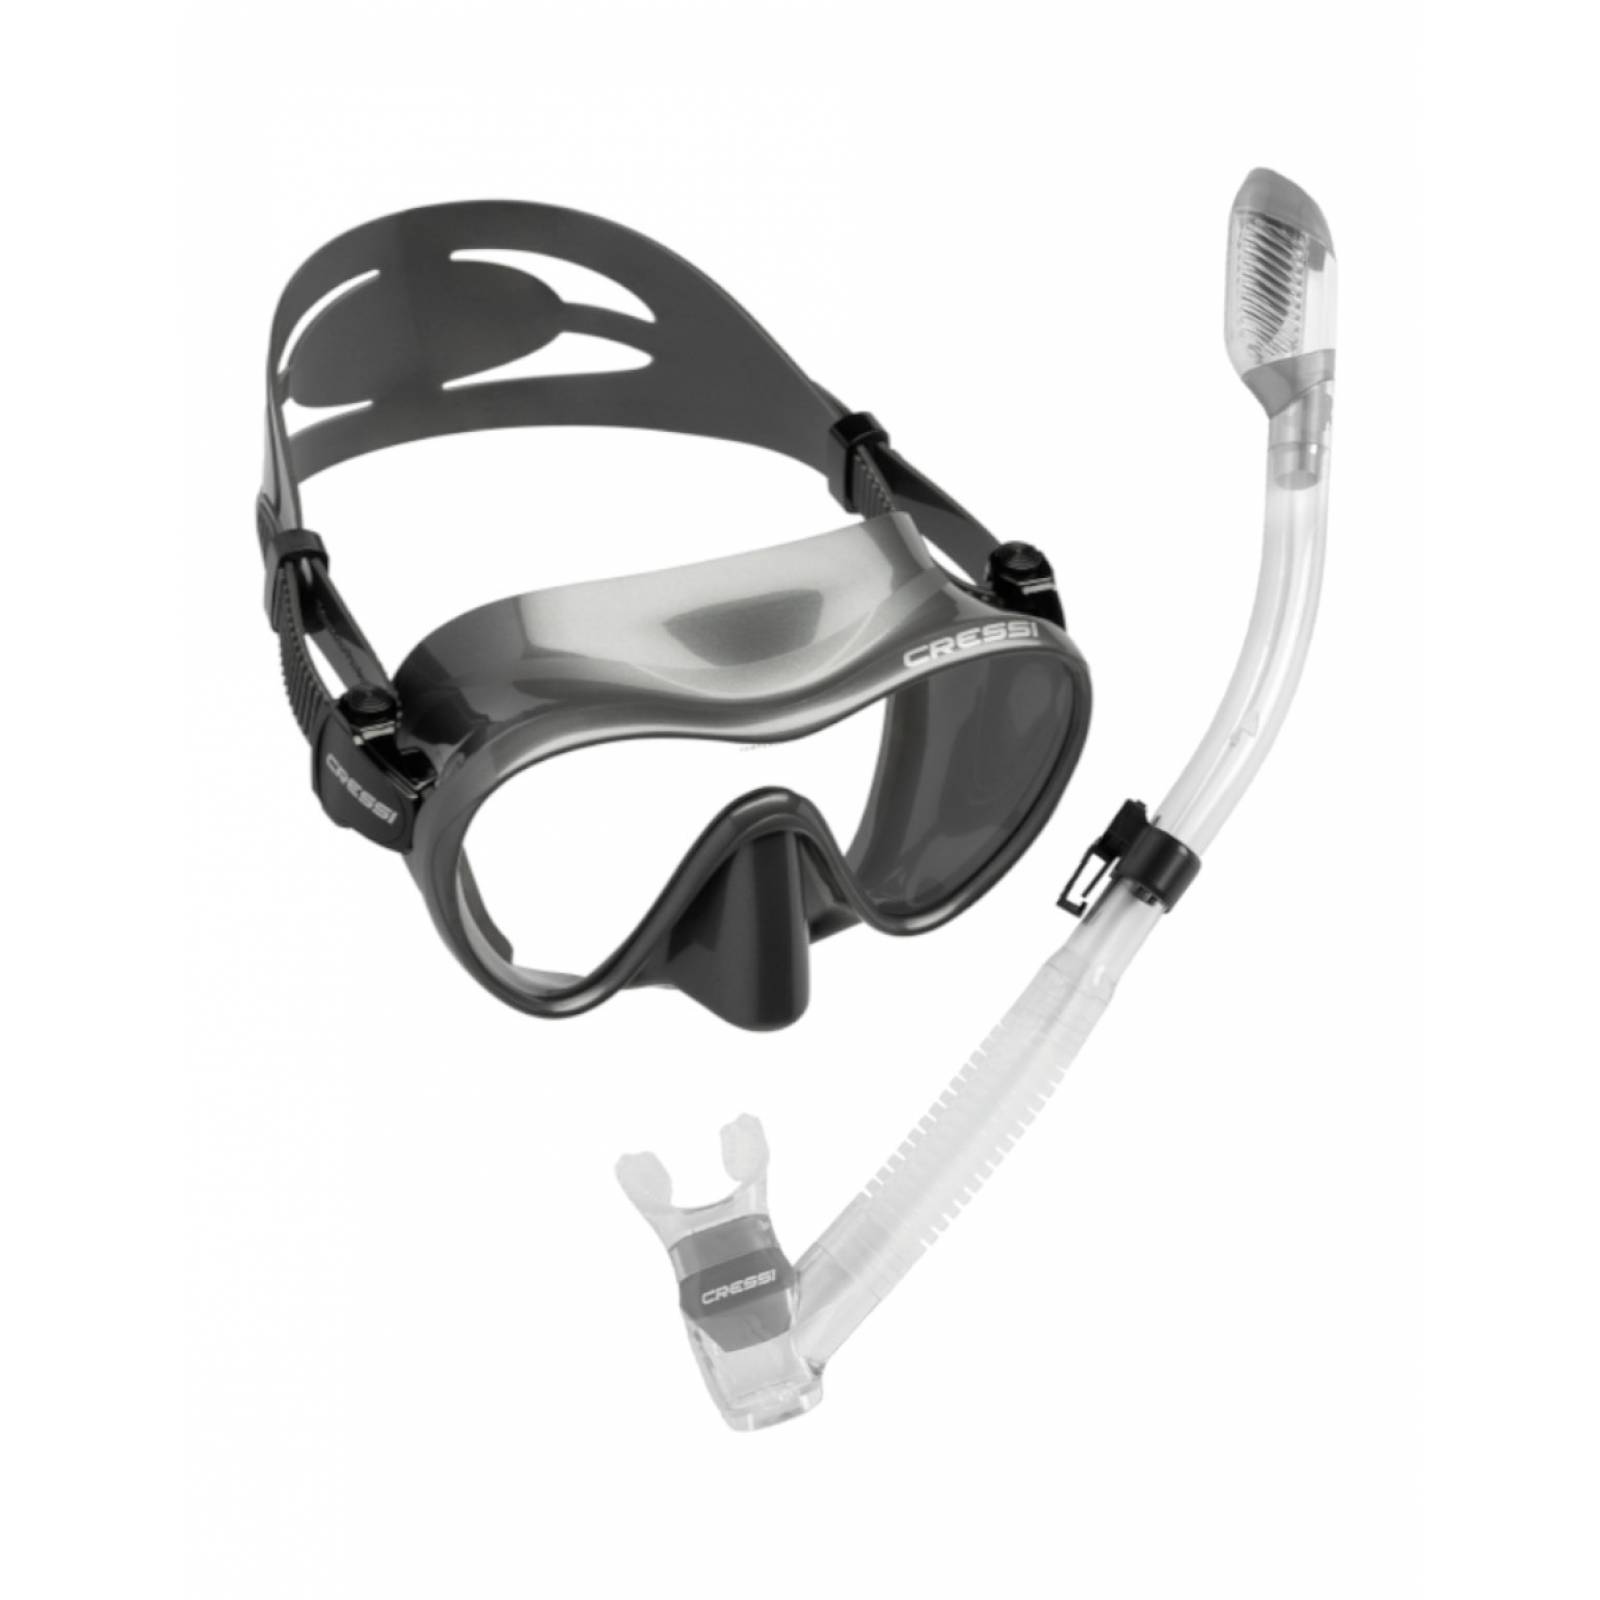 AGUA SHORT - Material de buceo, apnea, snorkeling y natación